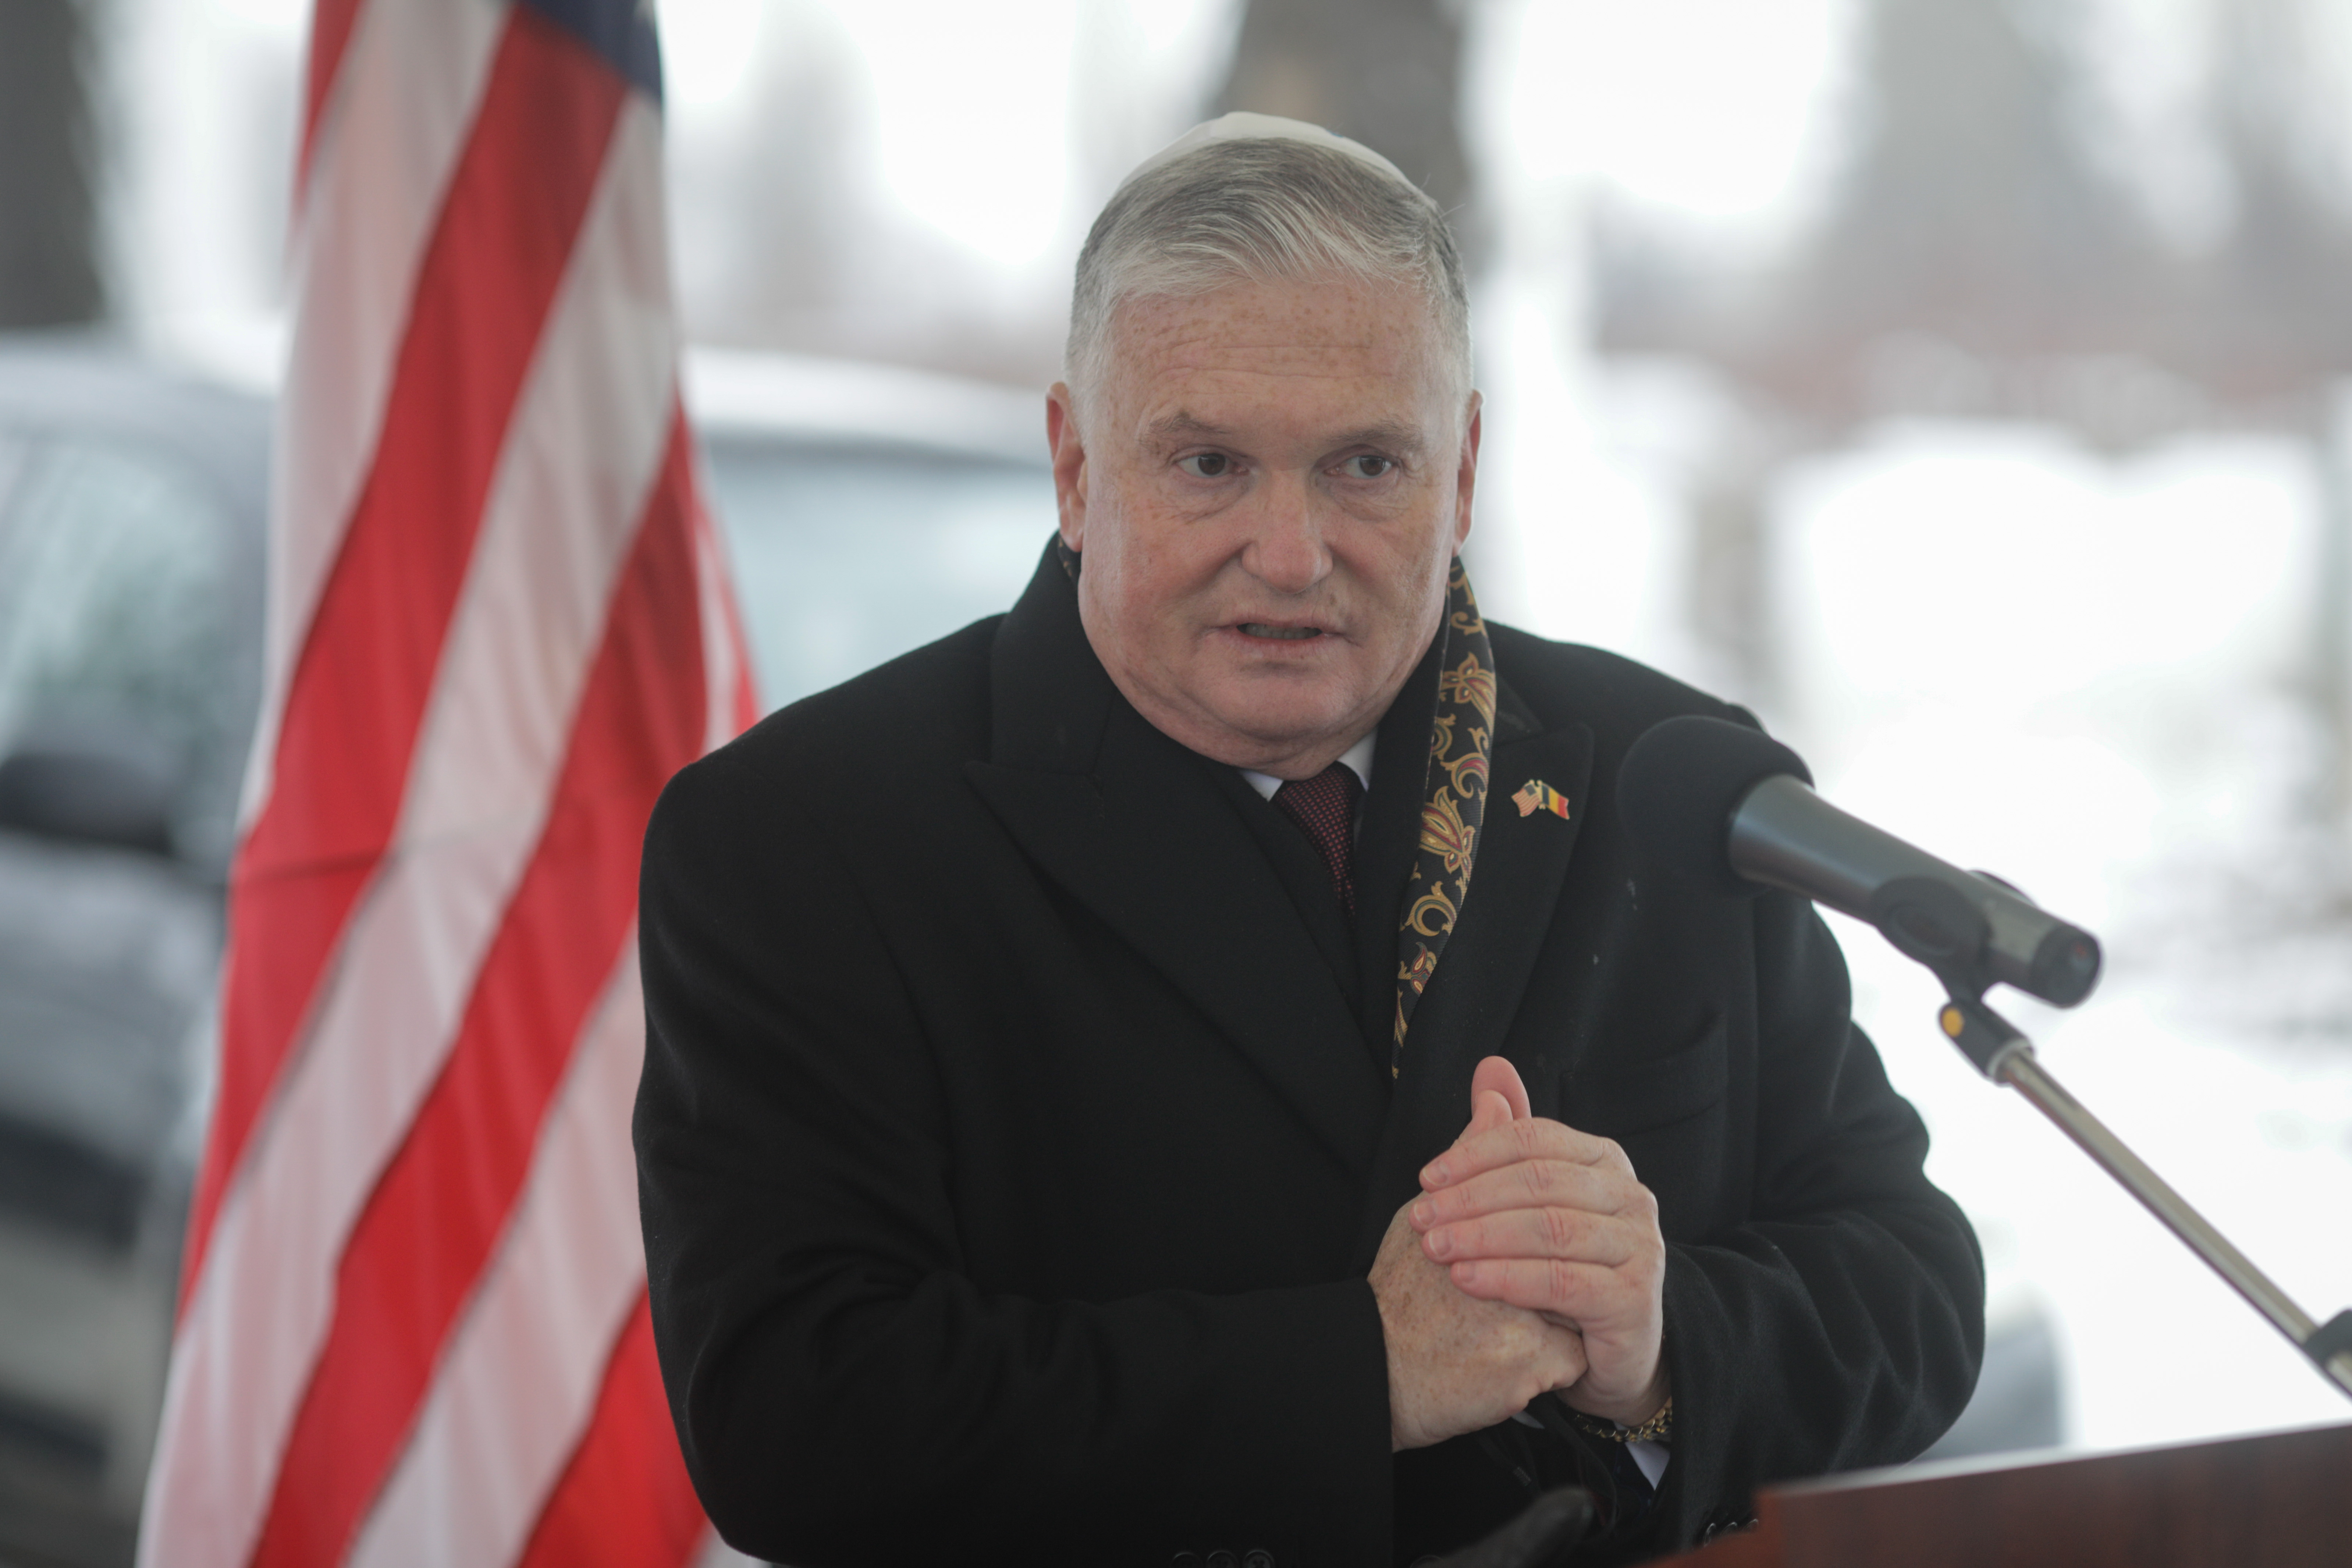 Ambasadorul SUA în România: ”A luat sfârşit vechea domnie a corupţiei, nepotismului şi criminalităţii organizate”